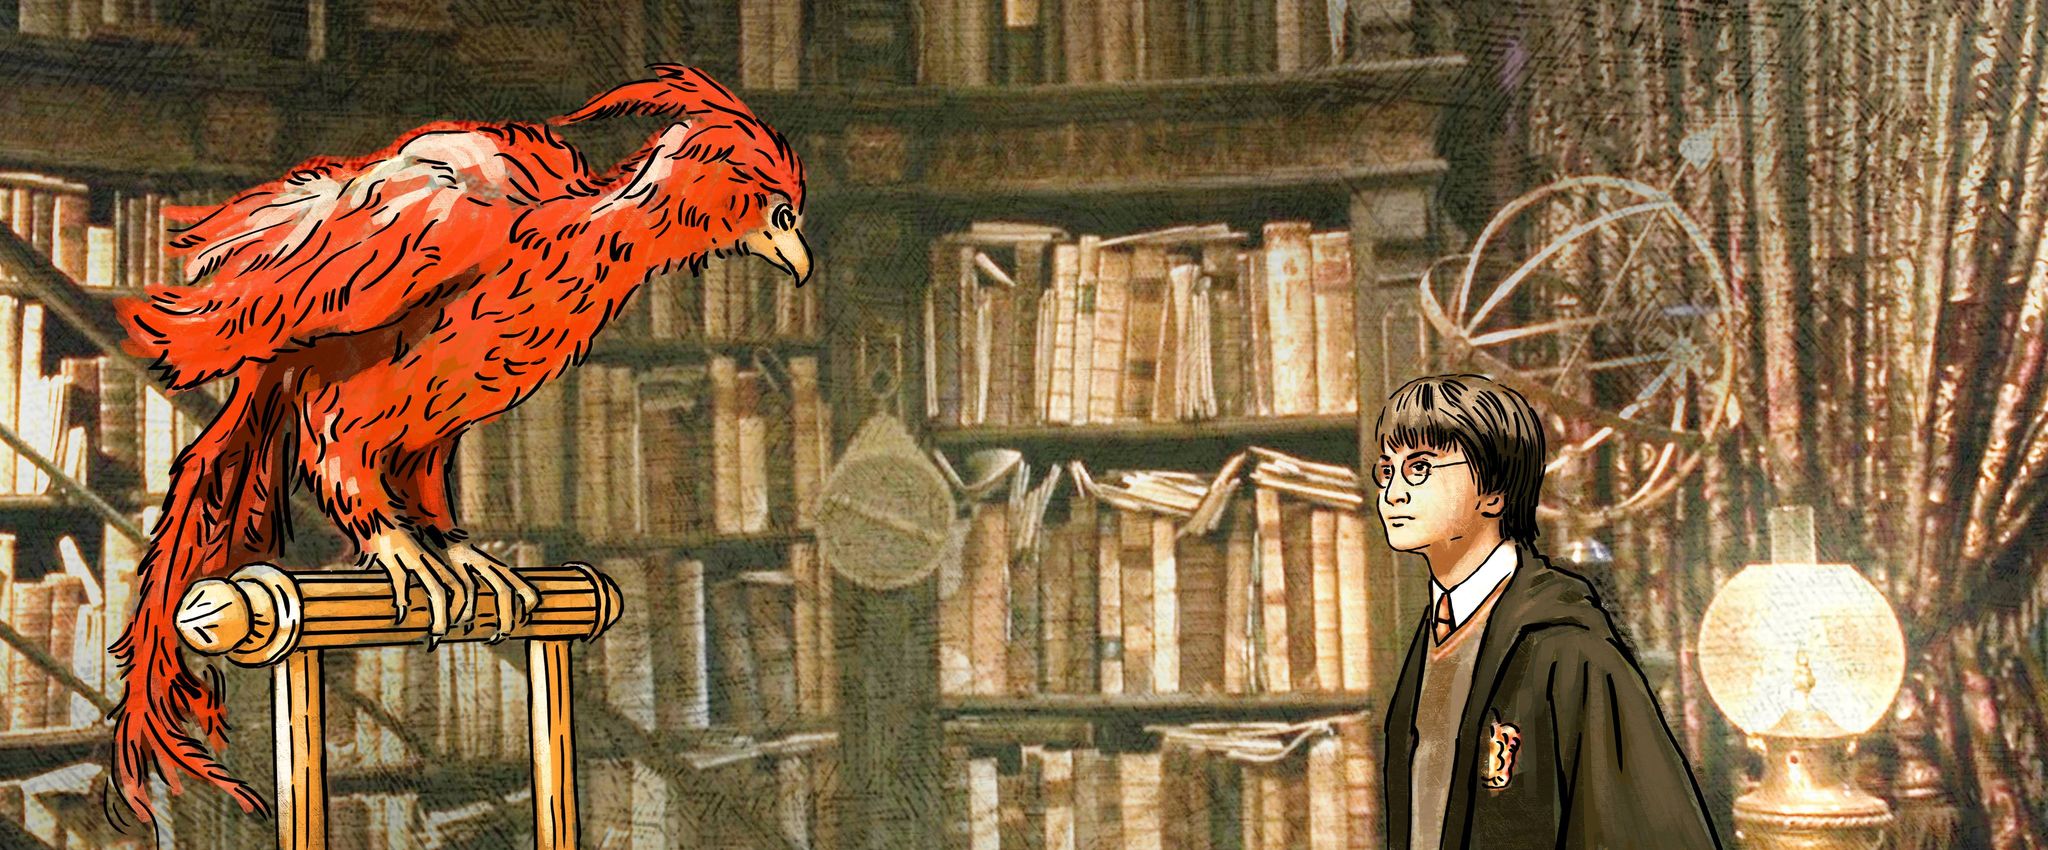 Grafika przedstawia wnętrze starej biblioteki. Z lewej strony siedzi na drążku jaskrawoczerwony Feniks, a z głębi po prawej przygląda mu się cimnowłosy chłopiec w okularach i czarnym stroju czarodzieja - Harry Potter